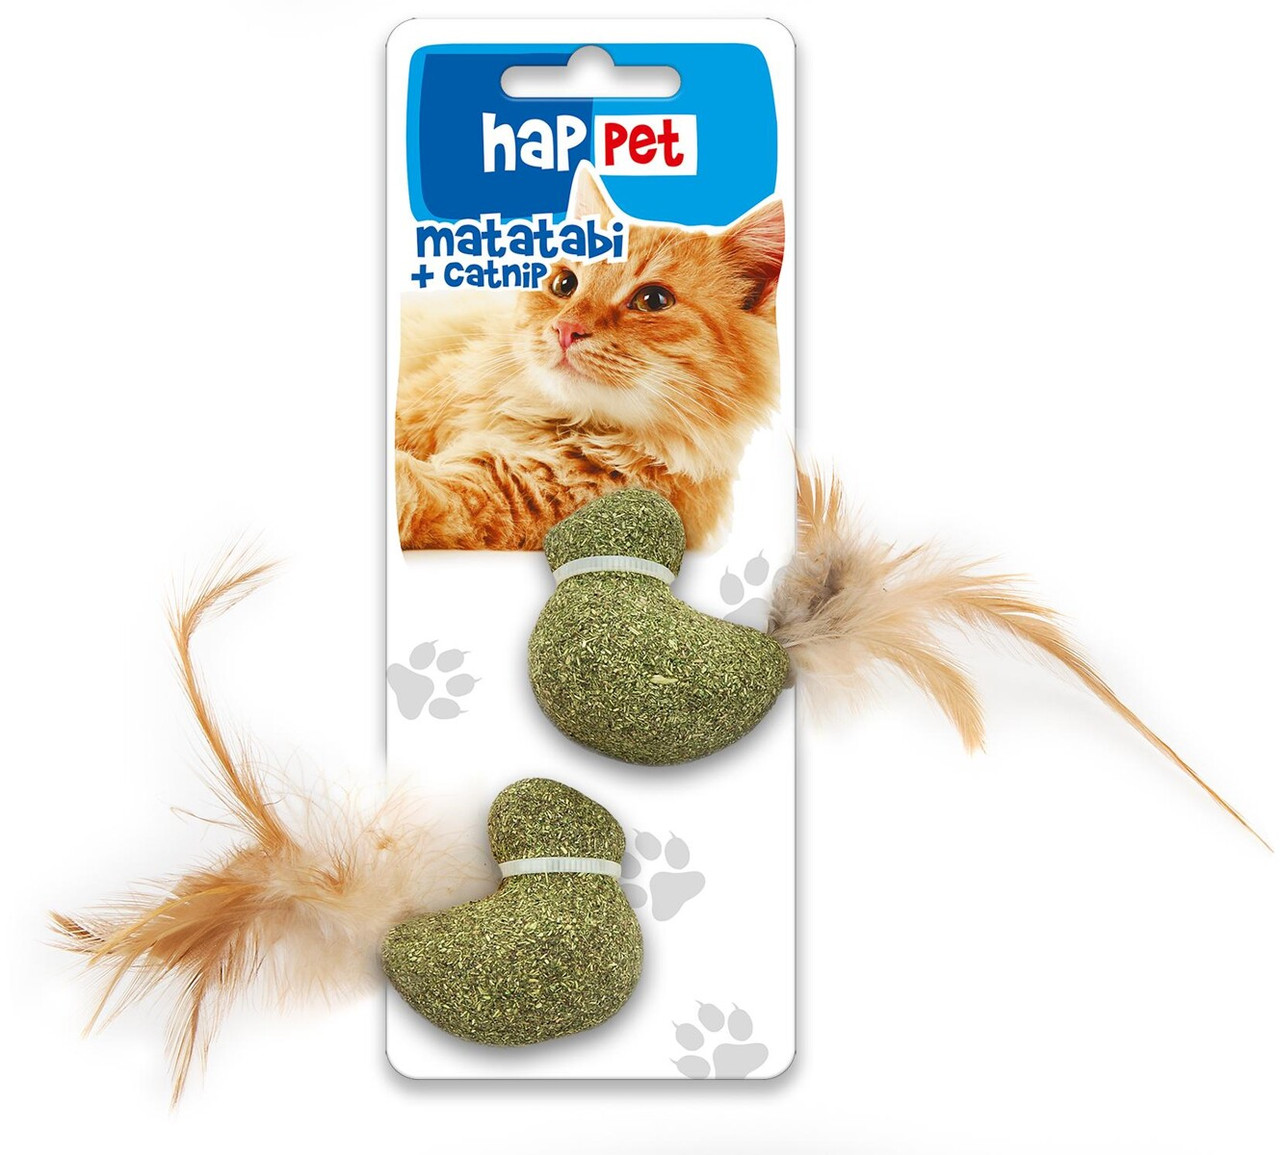 Happet Matatabi & Catnip іграшка для котів пташки з пір'ям